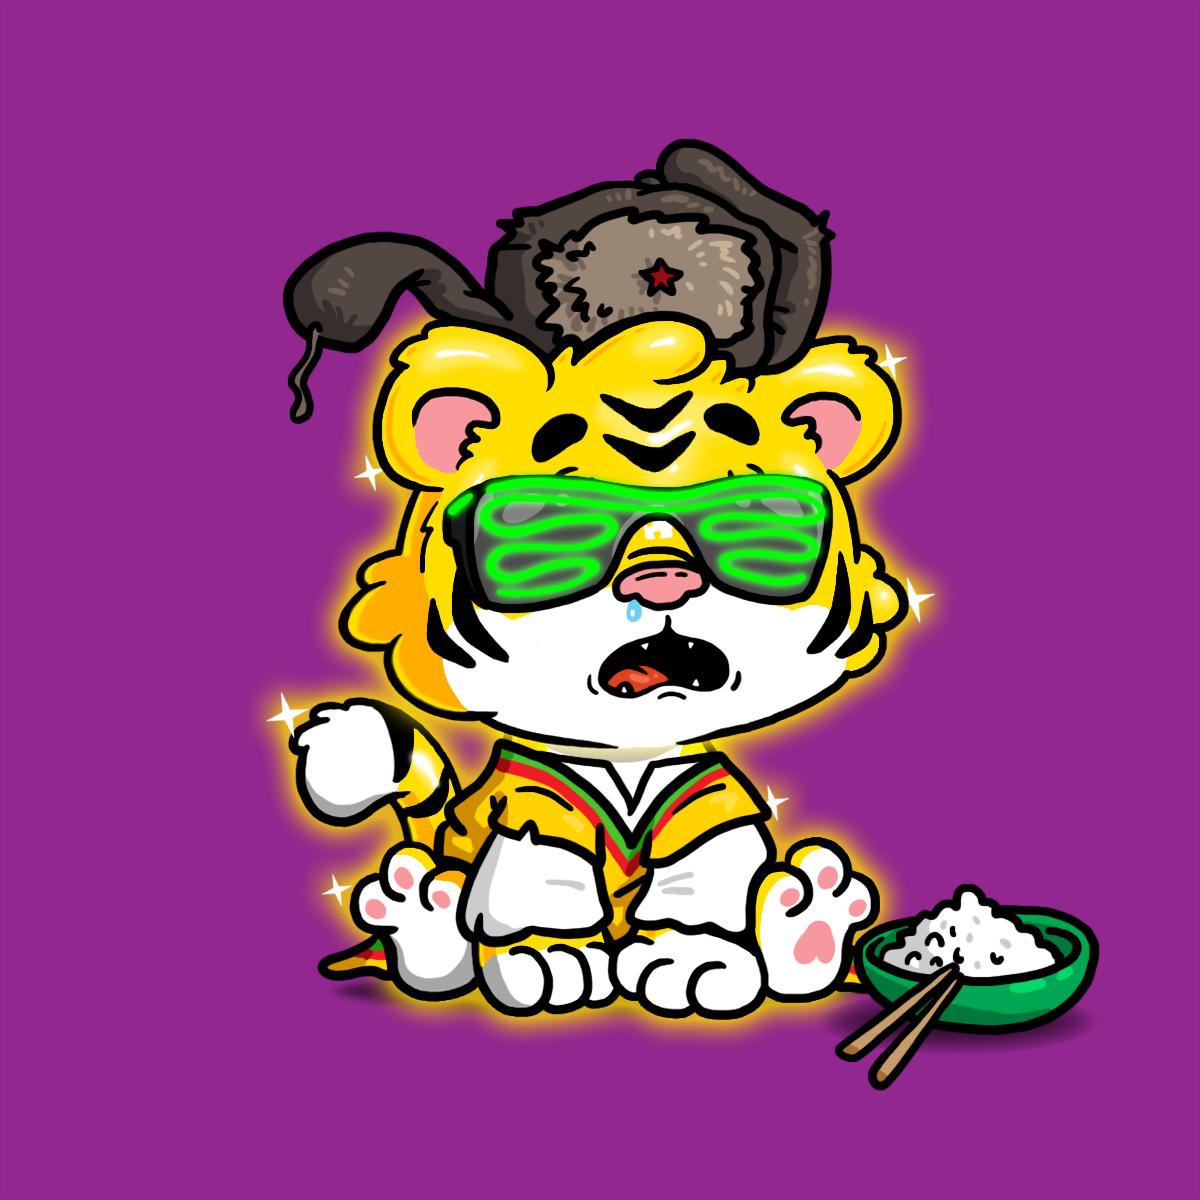 Grouchy Tiger Social Club - Golden Tiger Cultures Cub #1499